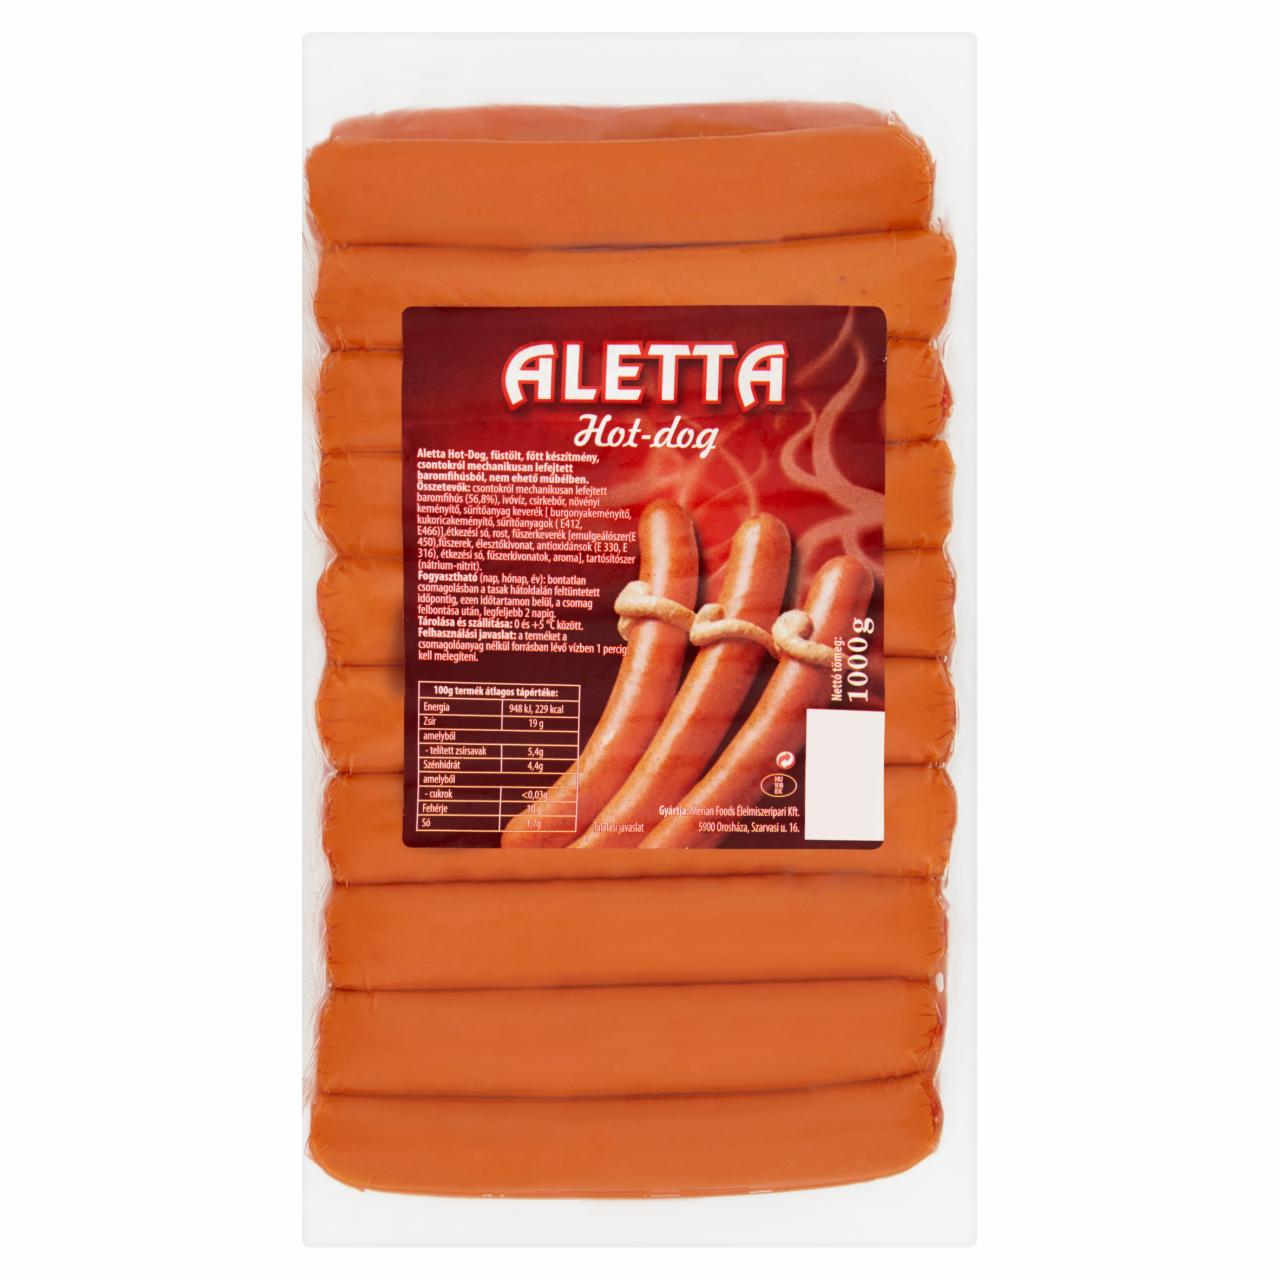 Képek - Aletta Hot-dog készítmény 1000 g